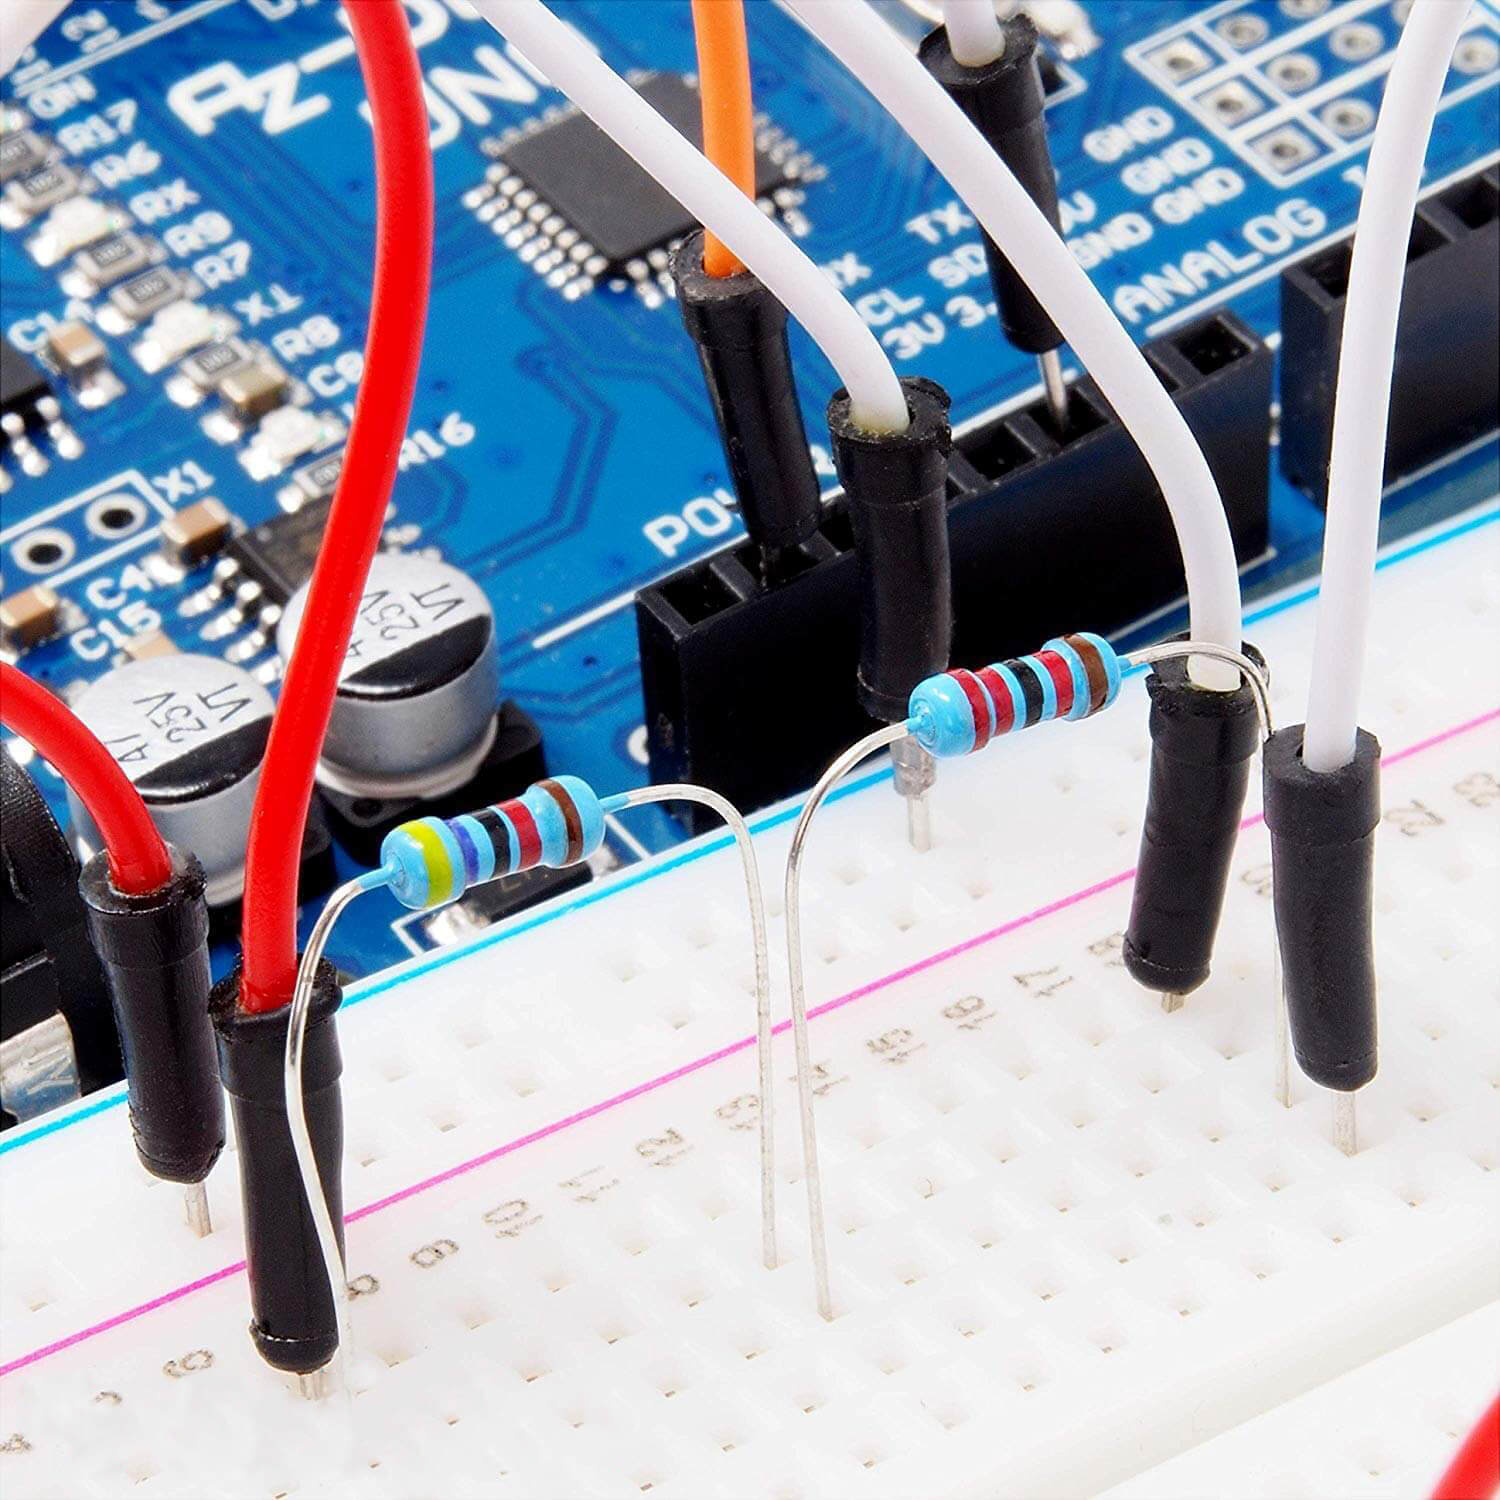 Widerstände Resistor Kit 525 Stück Widerstand Sortiment, 0 Ohm -1M Ohm